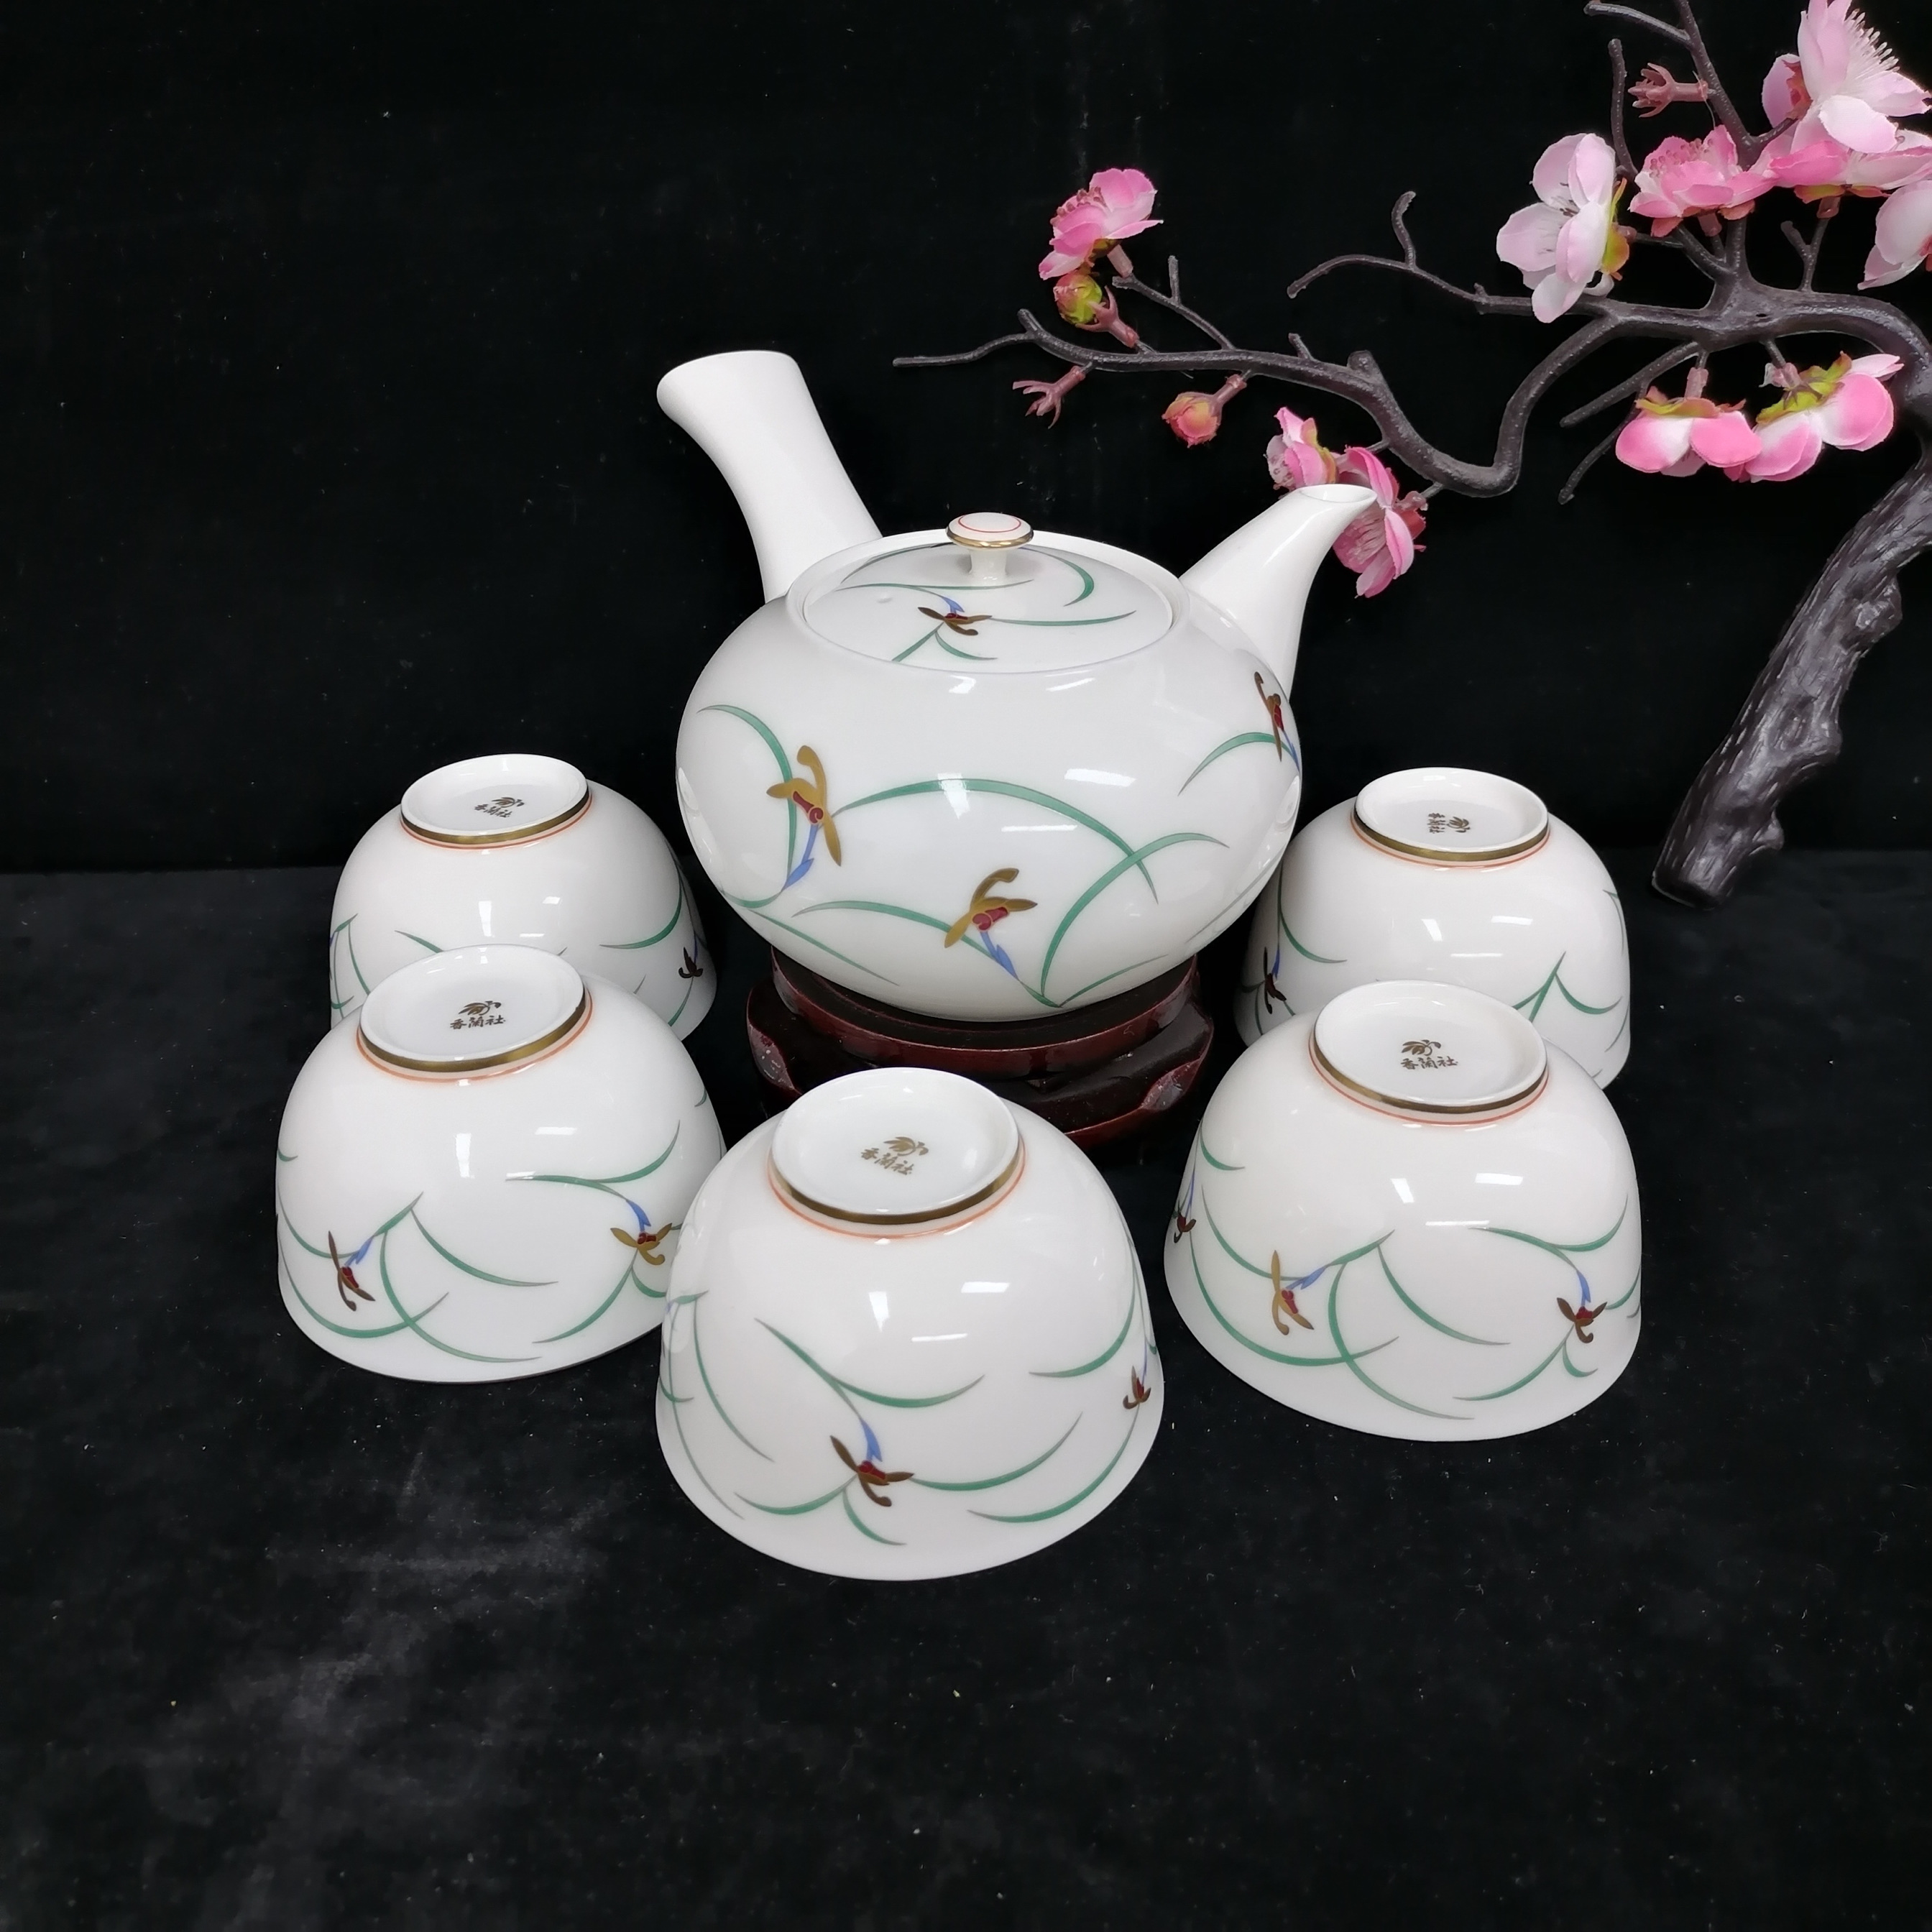 日本进口 皇家御用瓷器香兰社 茶具套 一壶五杯 手绘经典兰花